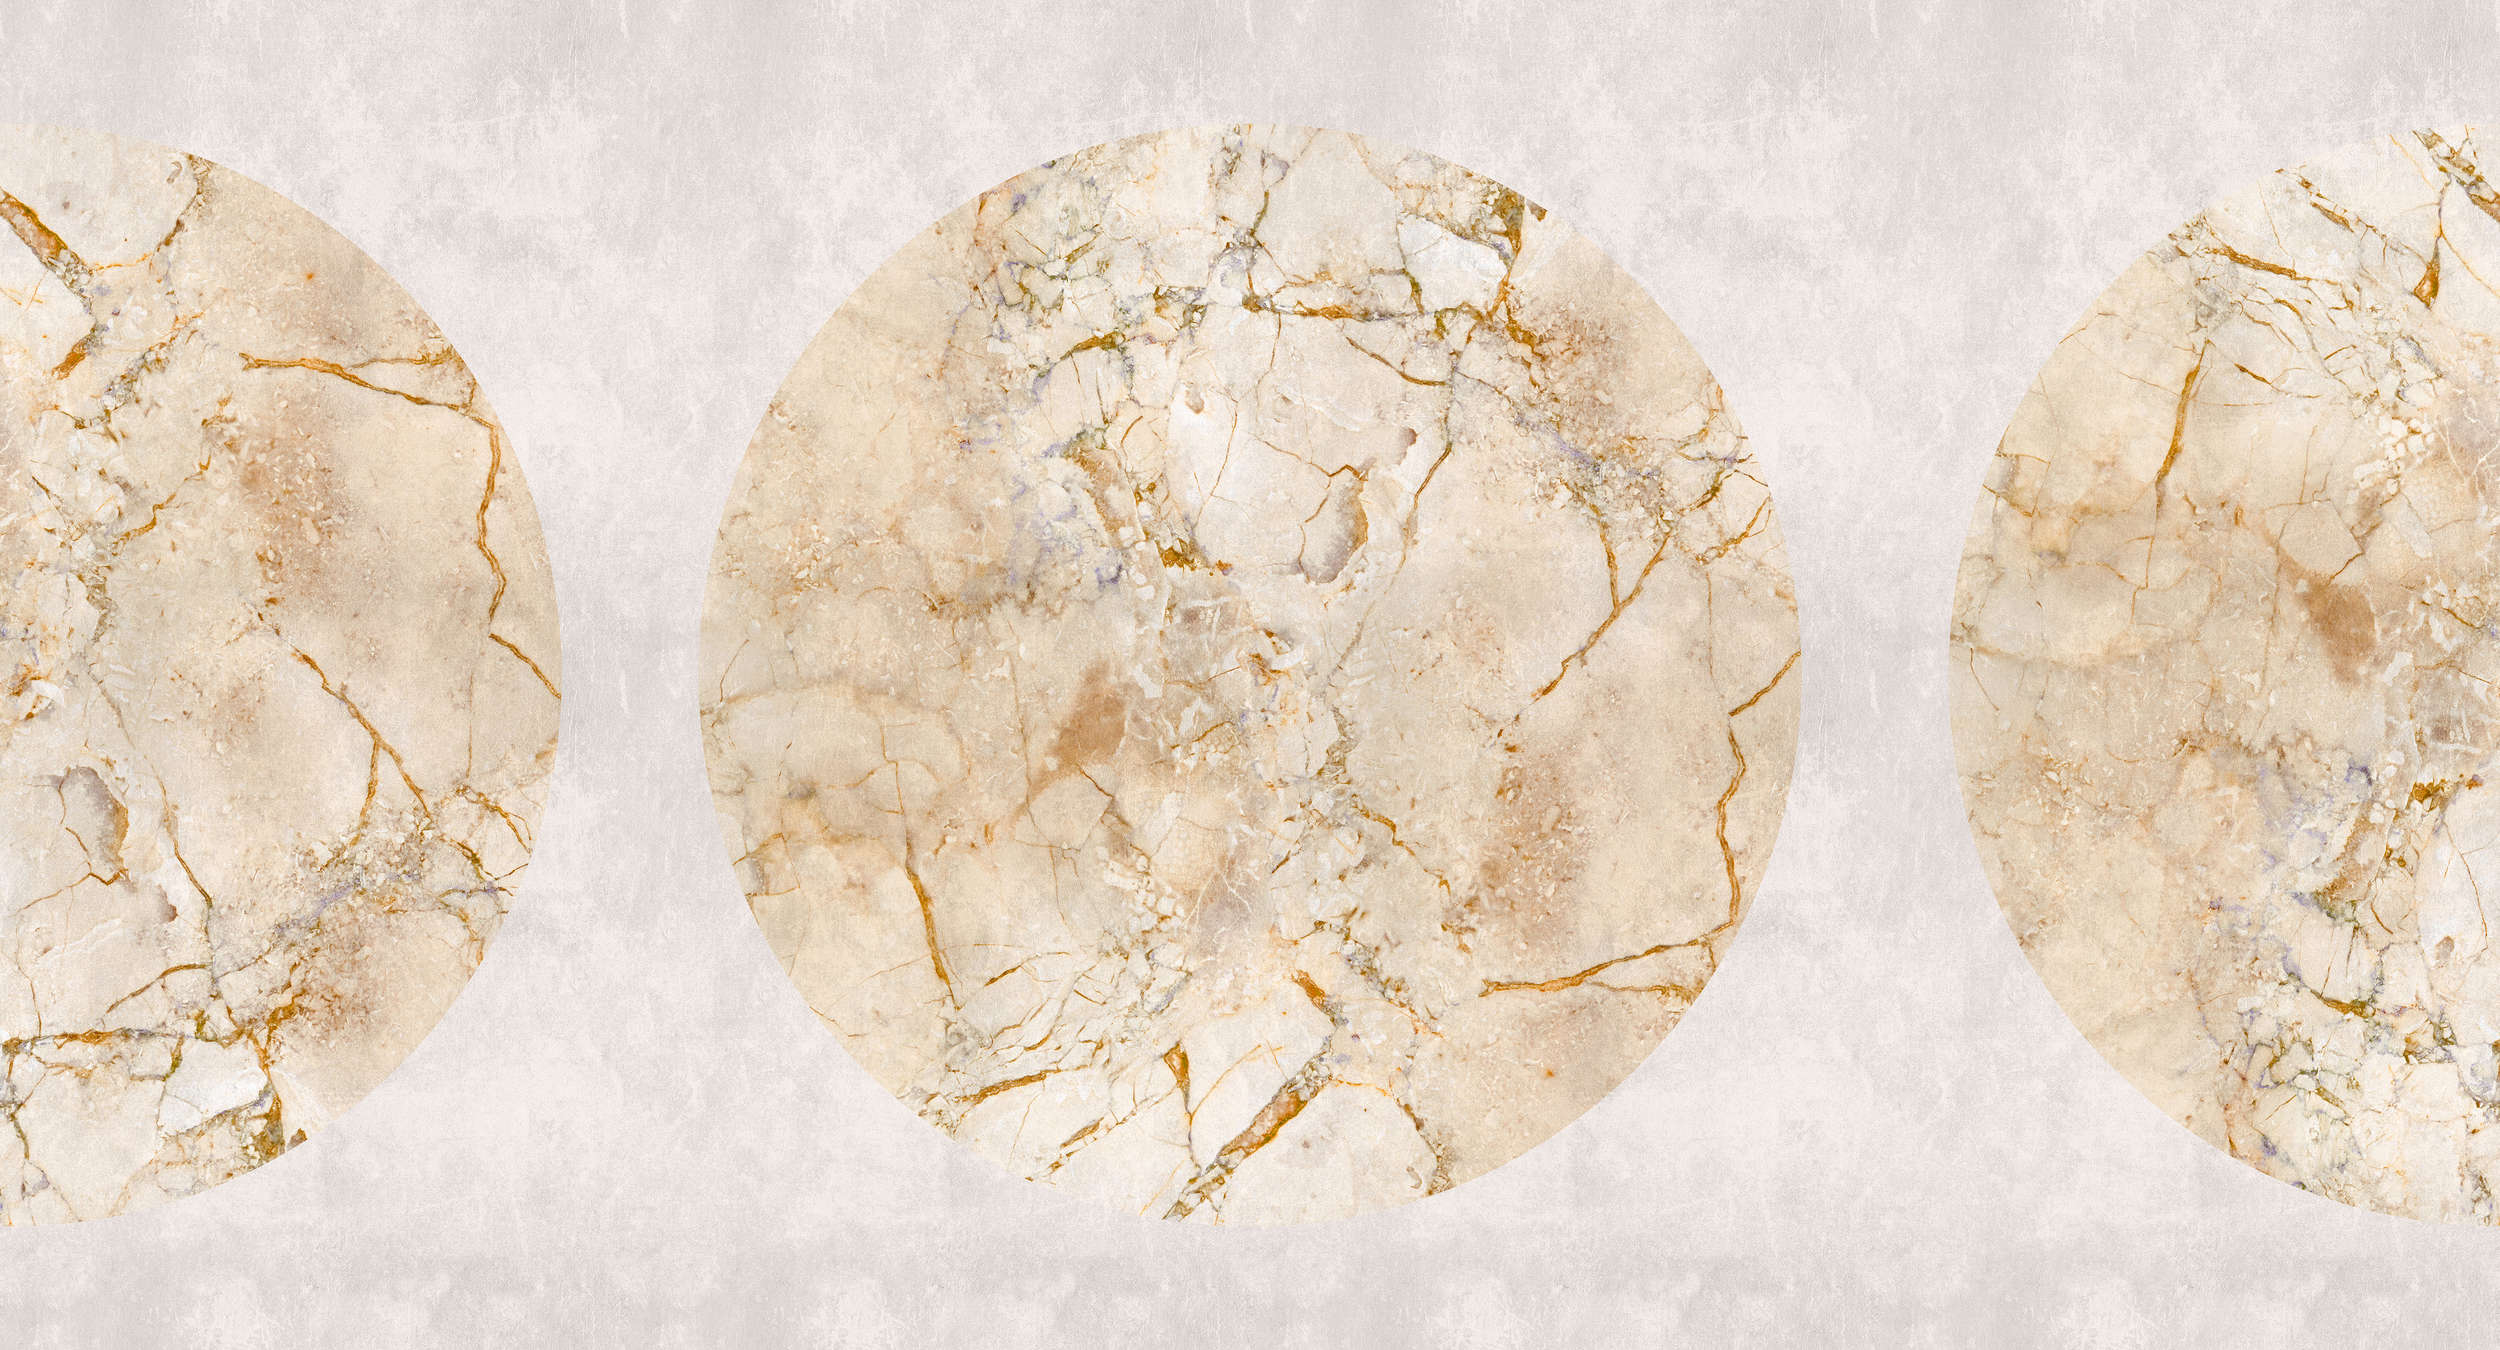             Venus 1 - Papier peint panoramique marbre doré avec motif circulaire & aspect crépi
        